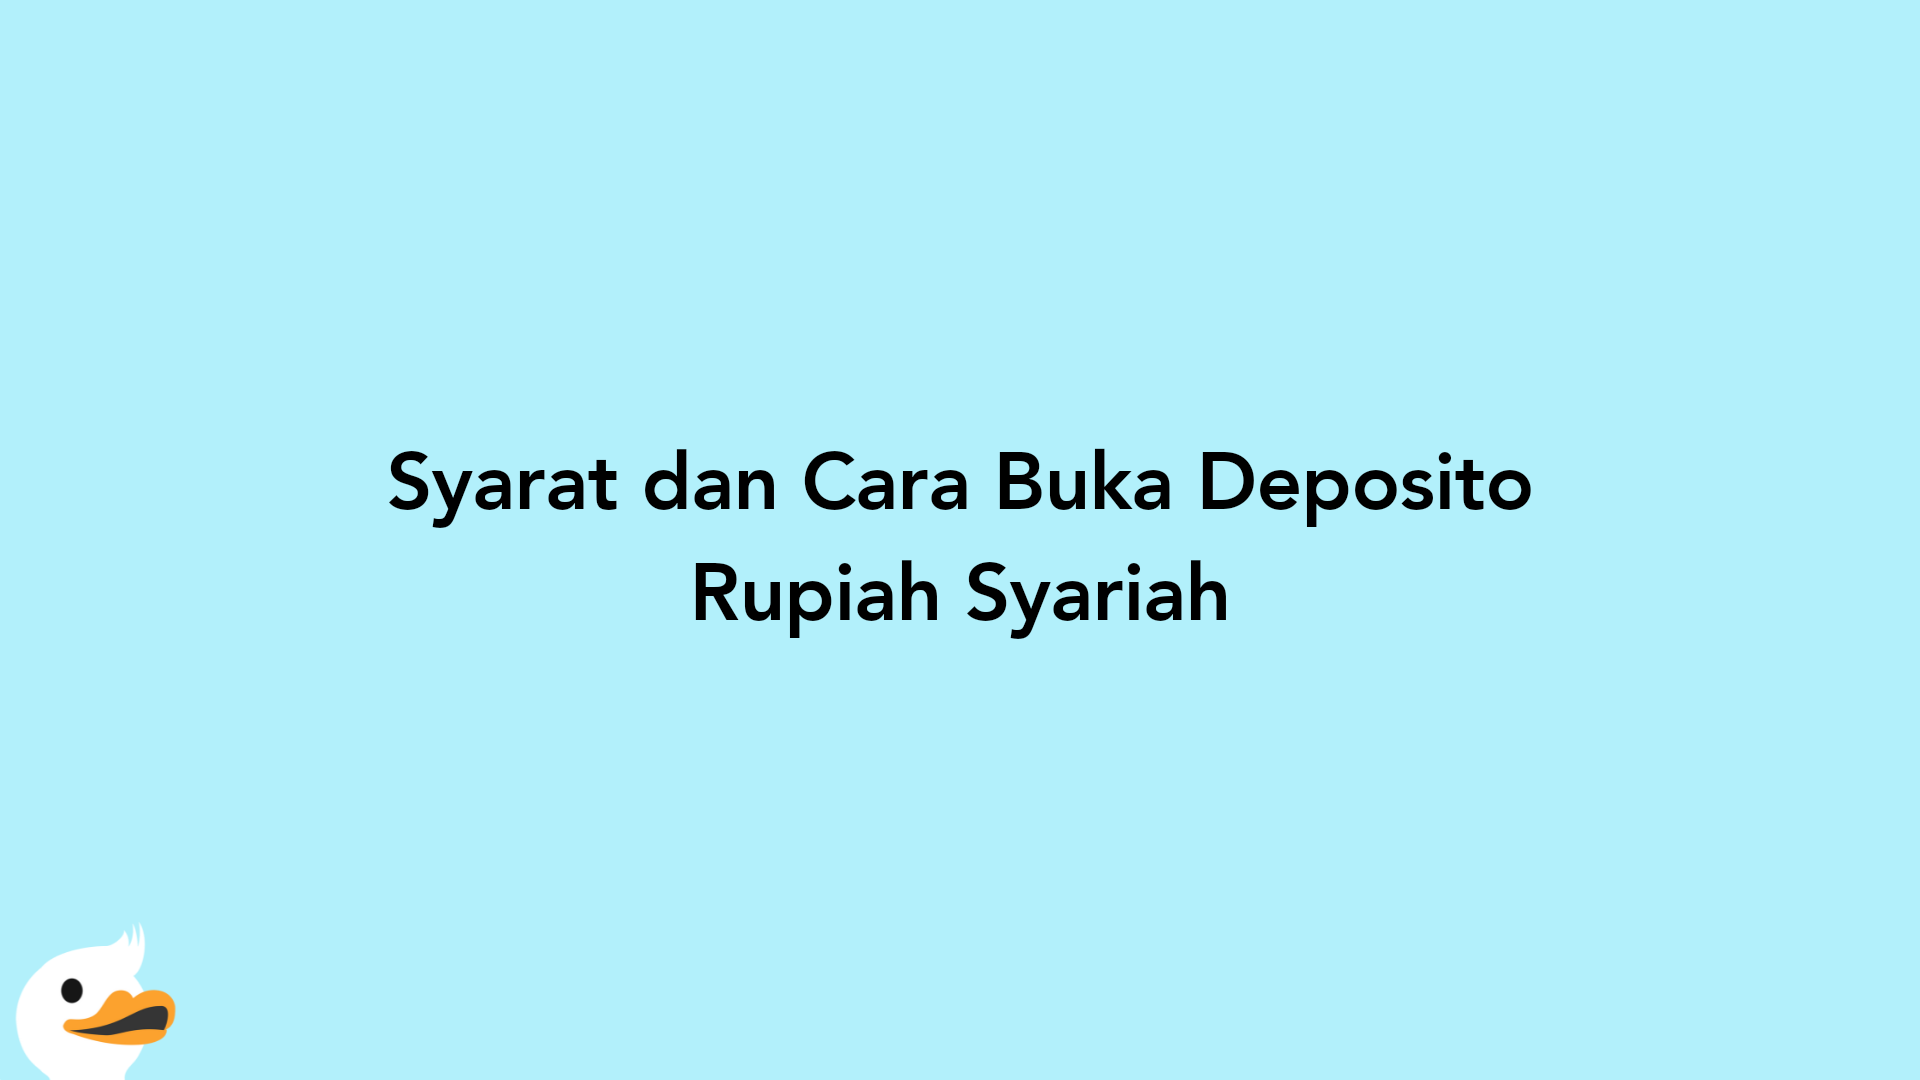 Syarat dan Cara Buka Deposito Rupiah Syariah